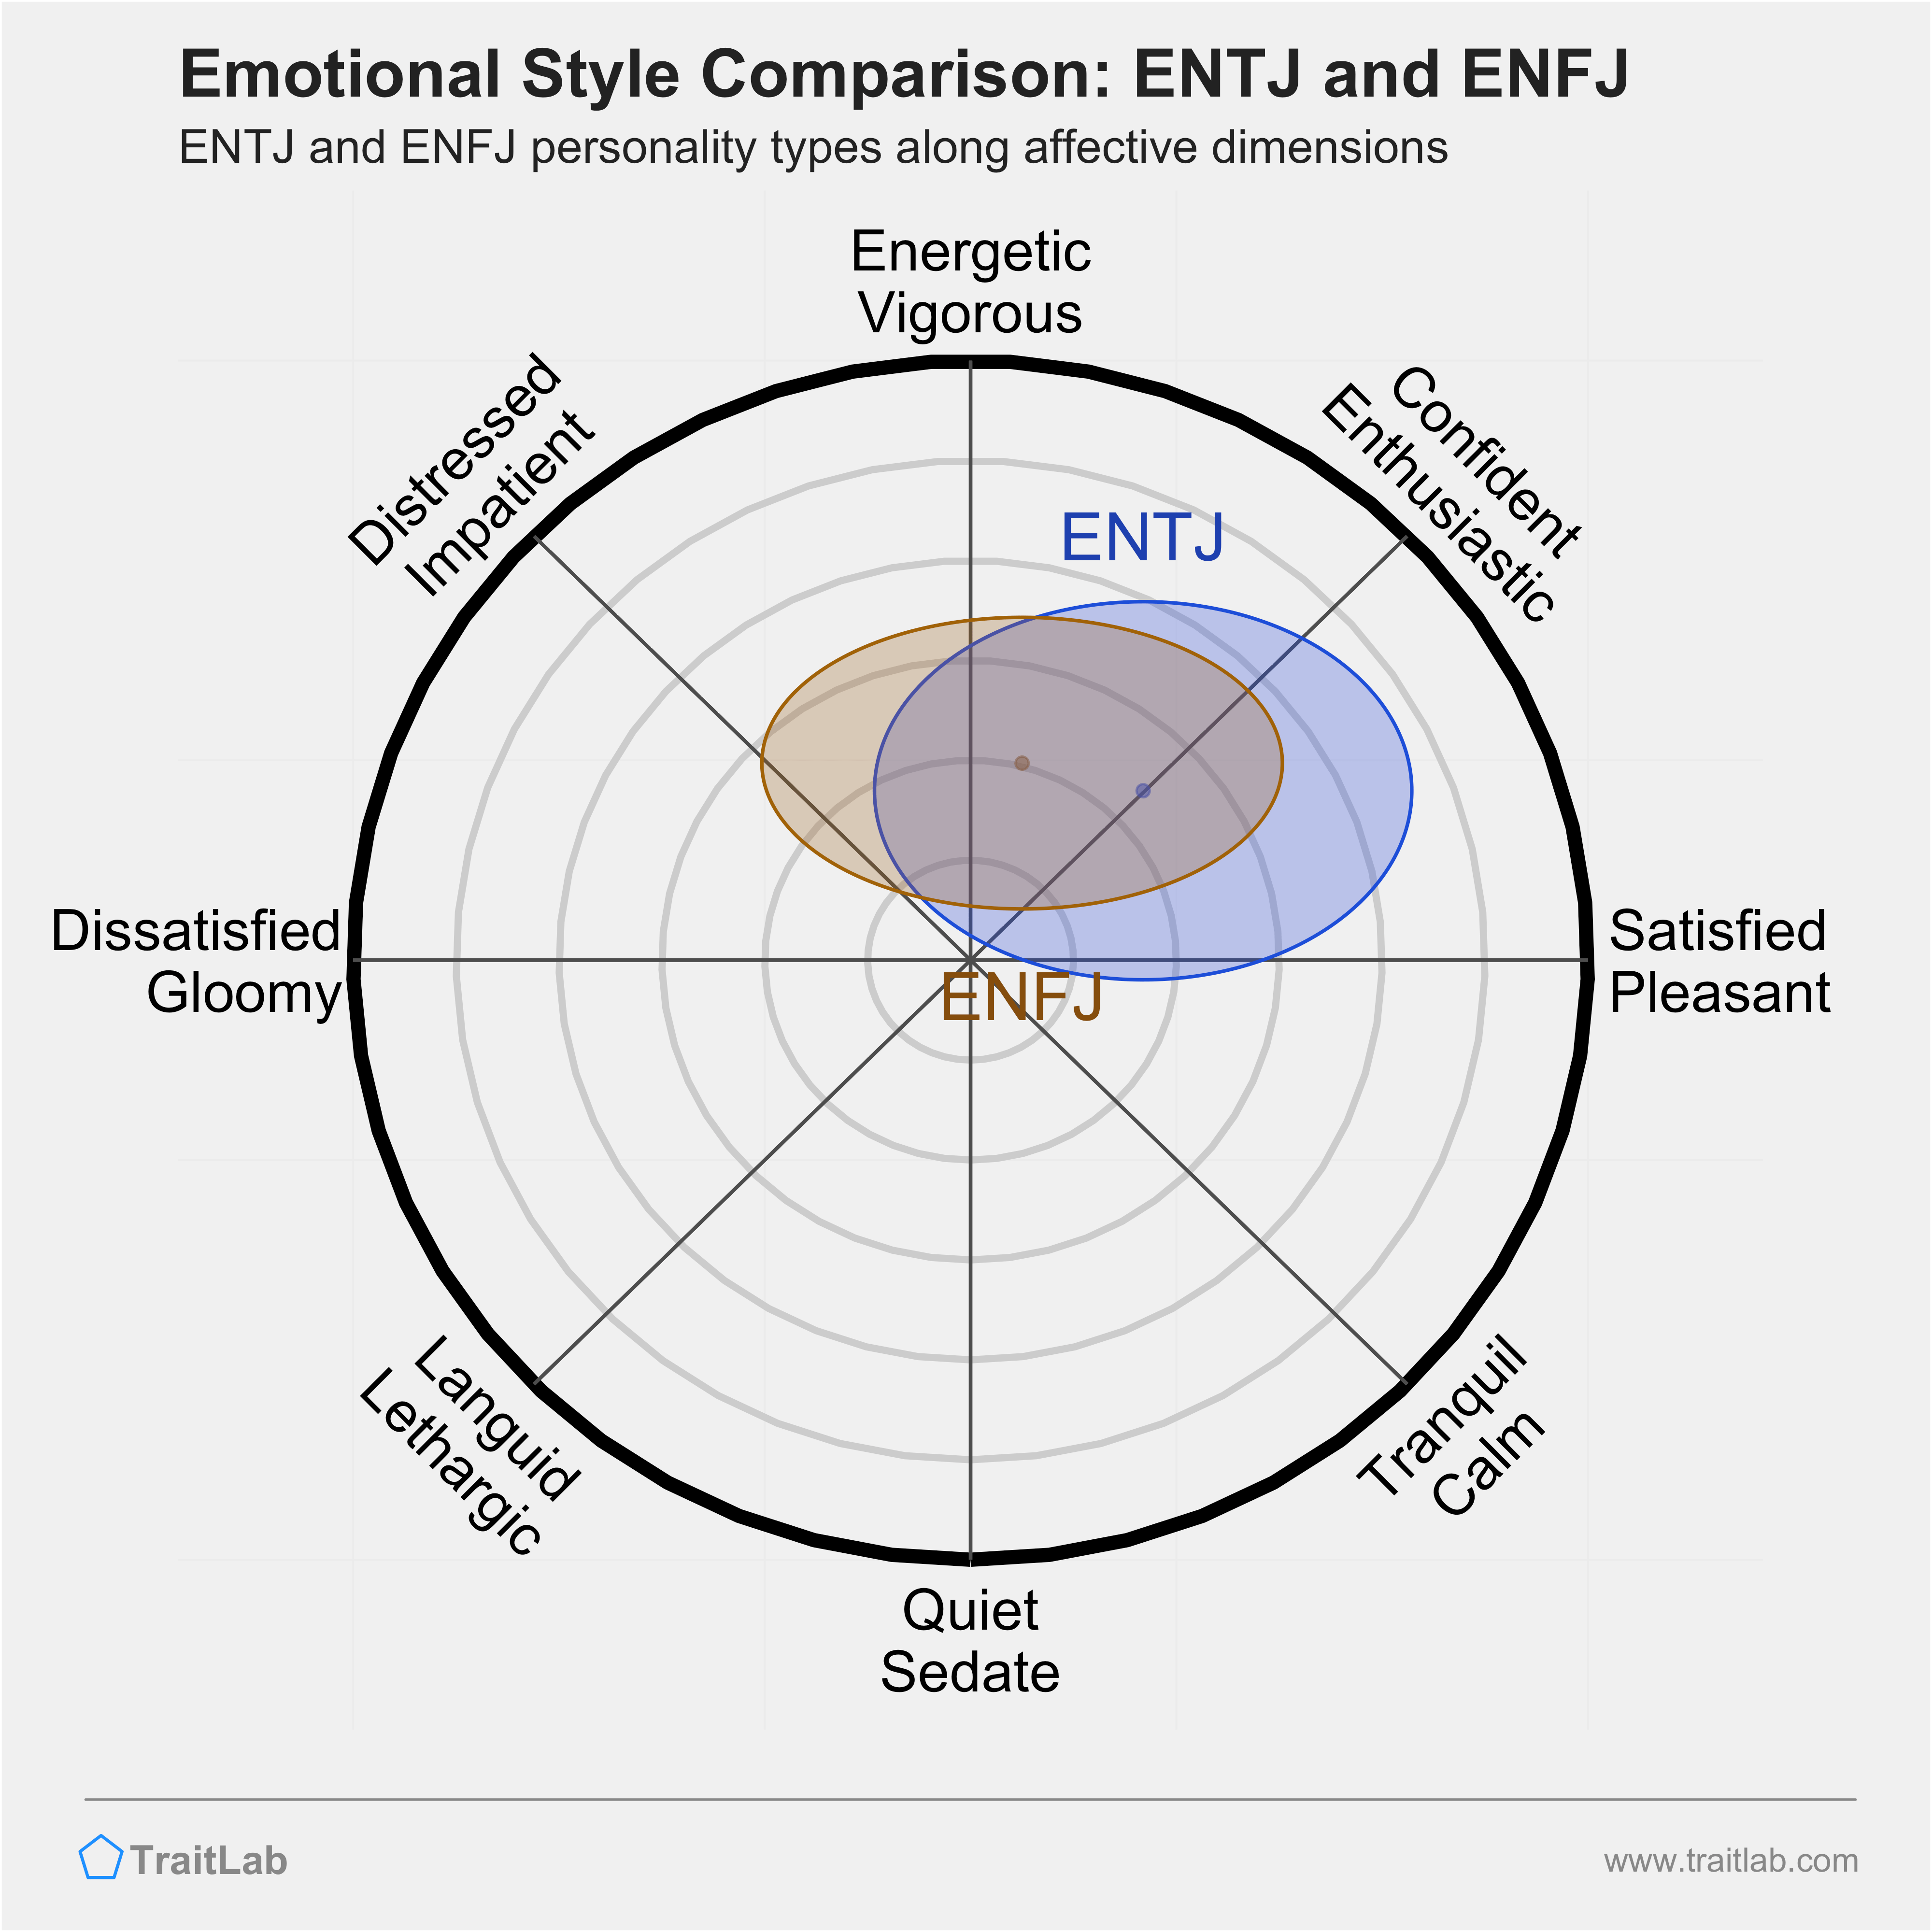 ENTJ and ENFJ comparison across emotional (affective) dimensions